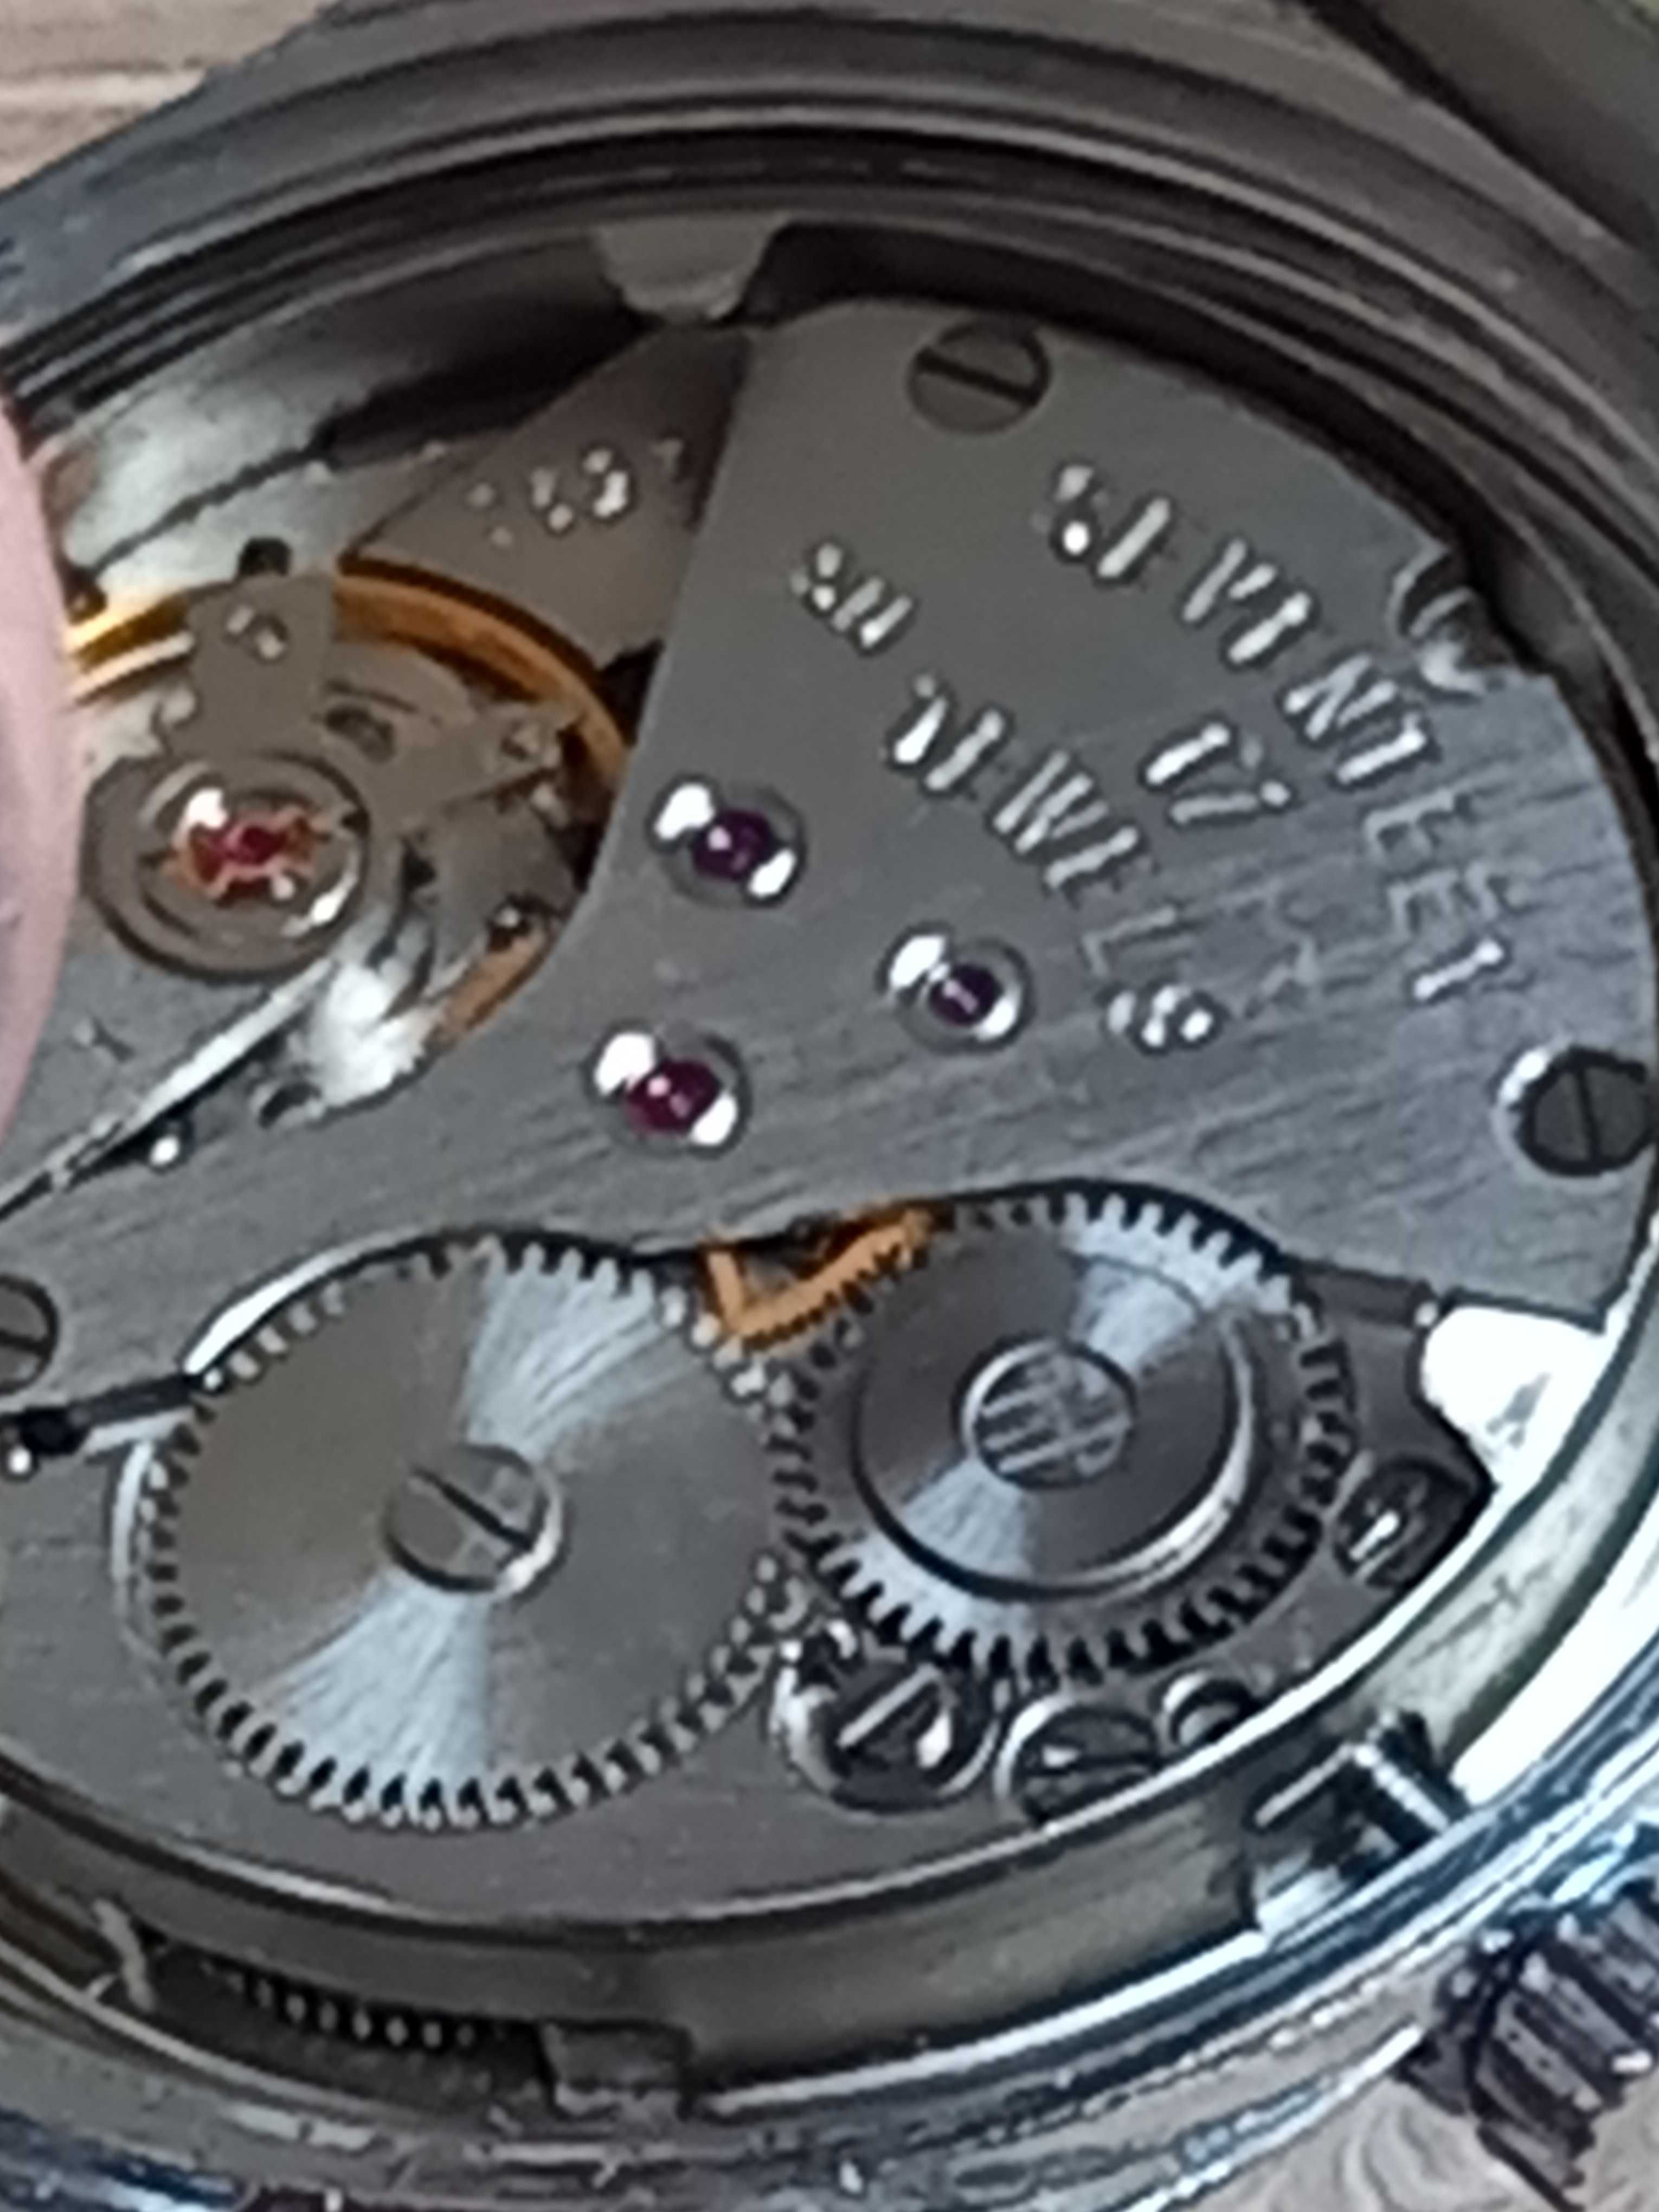 zegarek clasic 17 kamieni sprawny